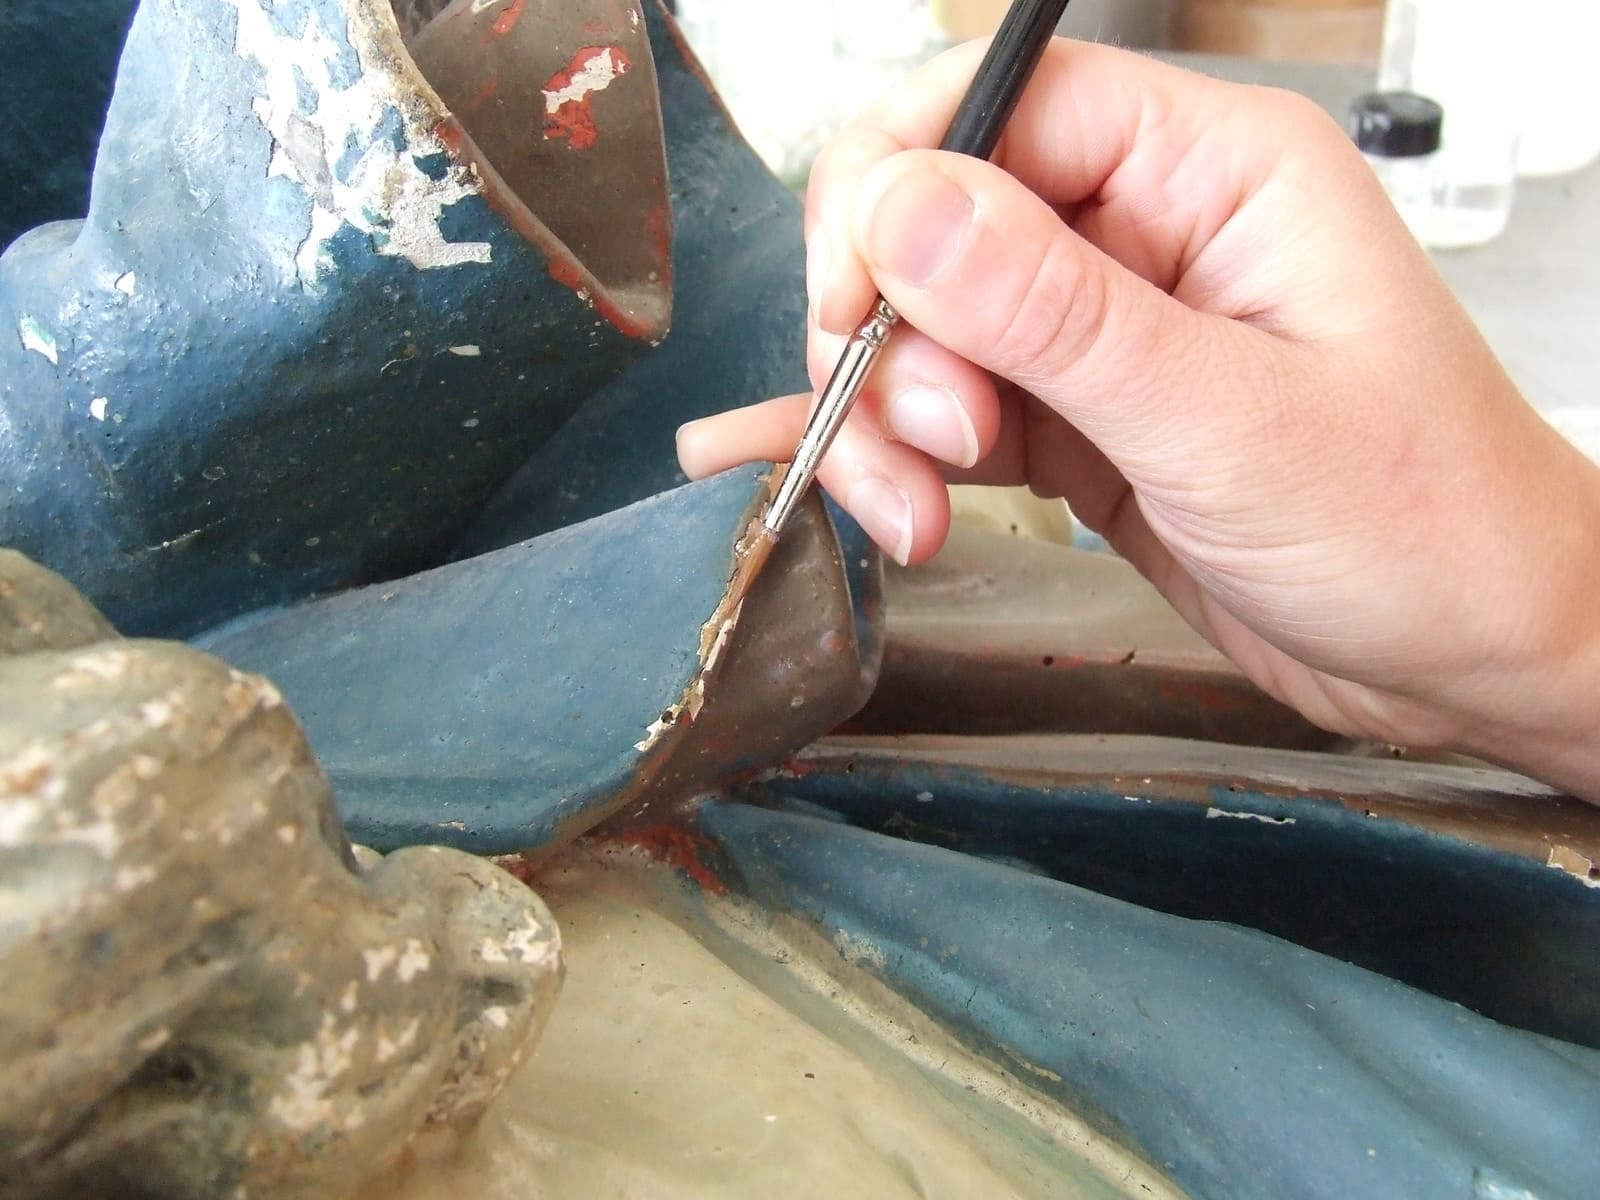 Fixage de polychromie : infiltration au pinceau d'un adhésif sous la peinture